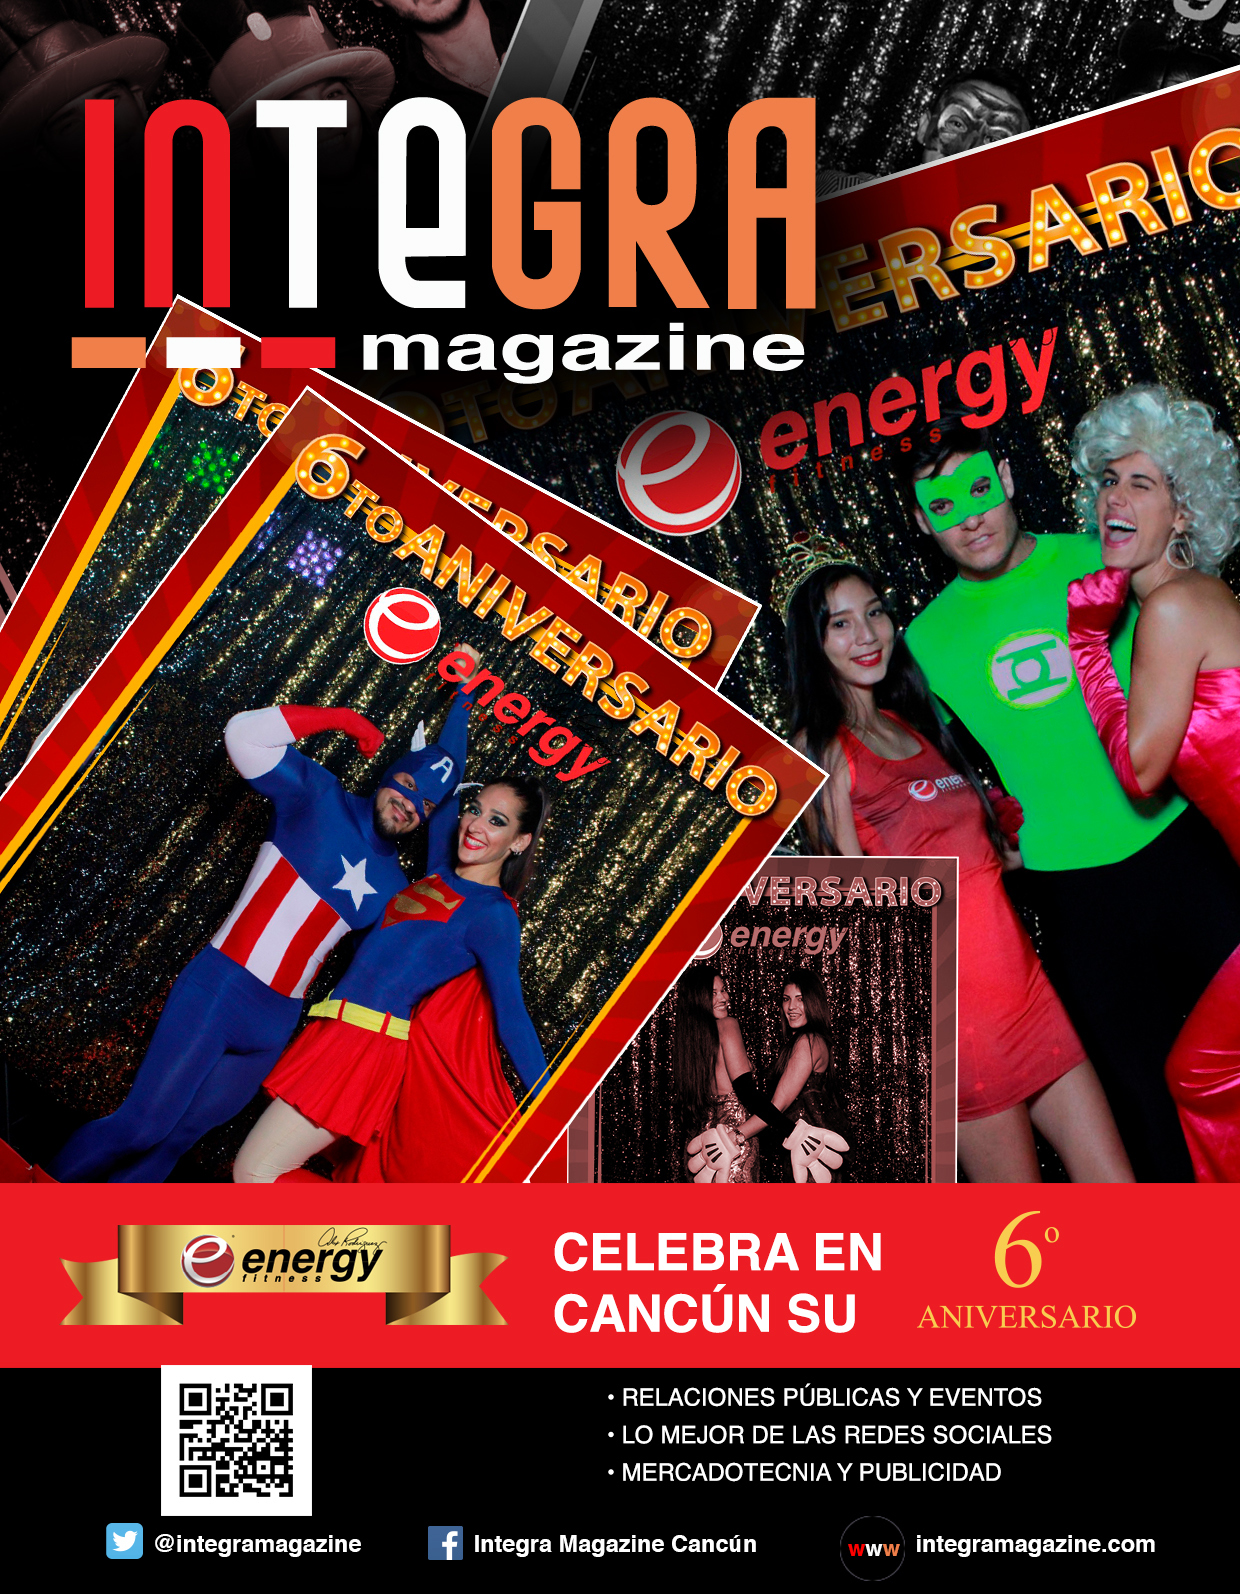 Energy – Celebra en Cancún su 6o. Aniversario